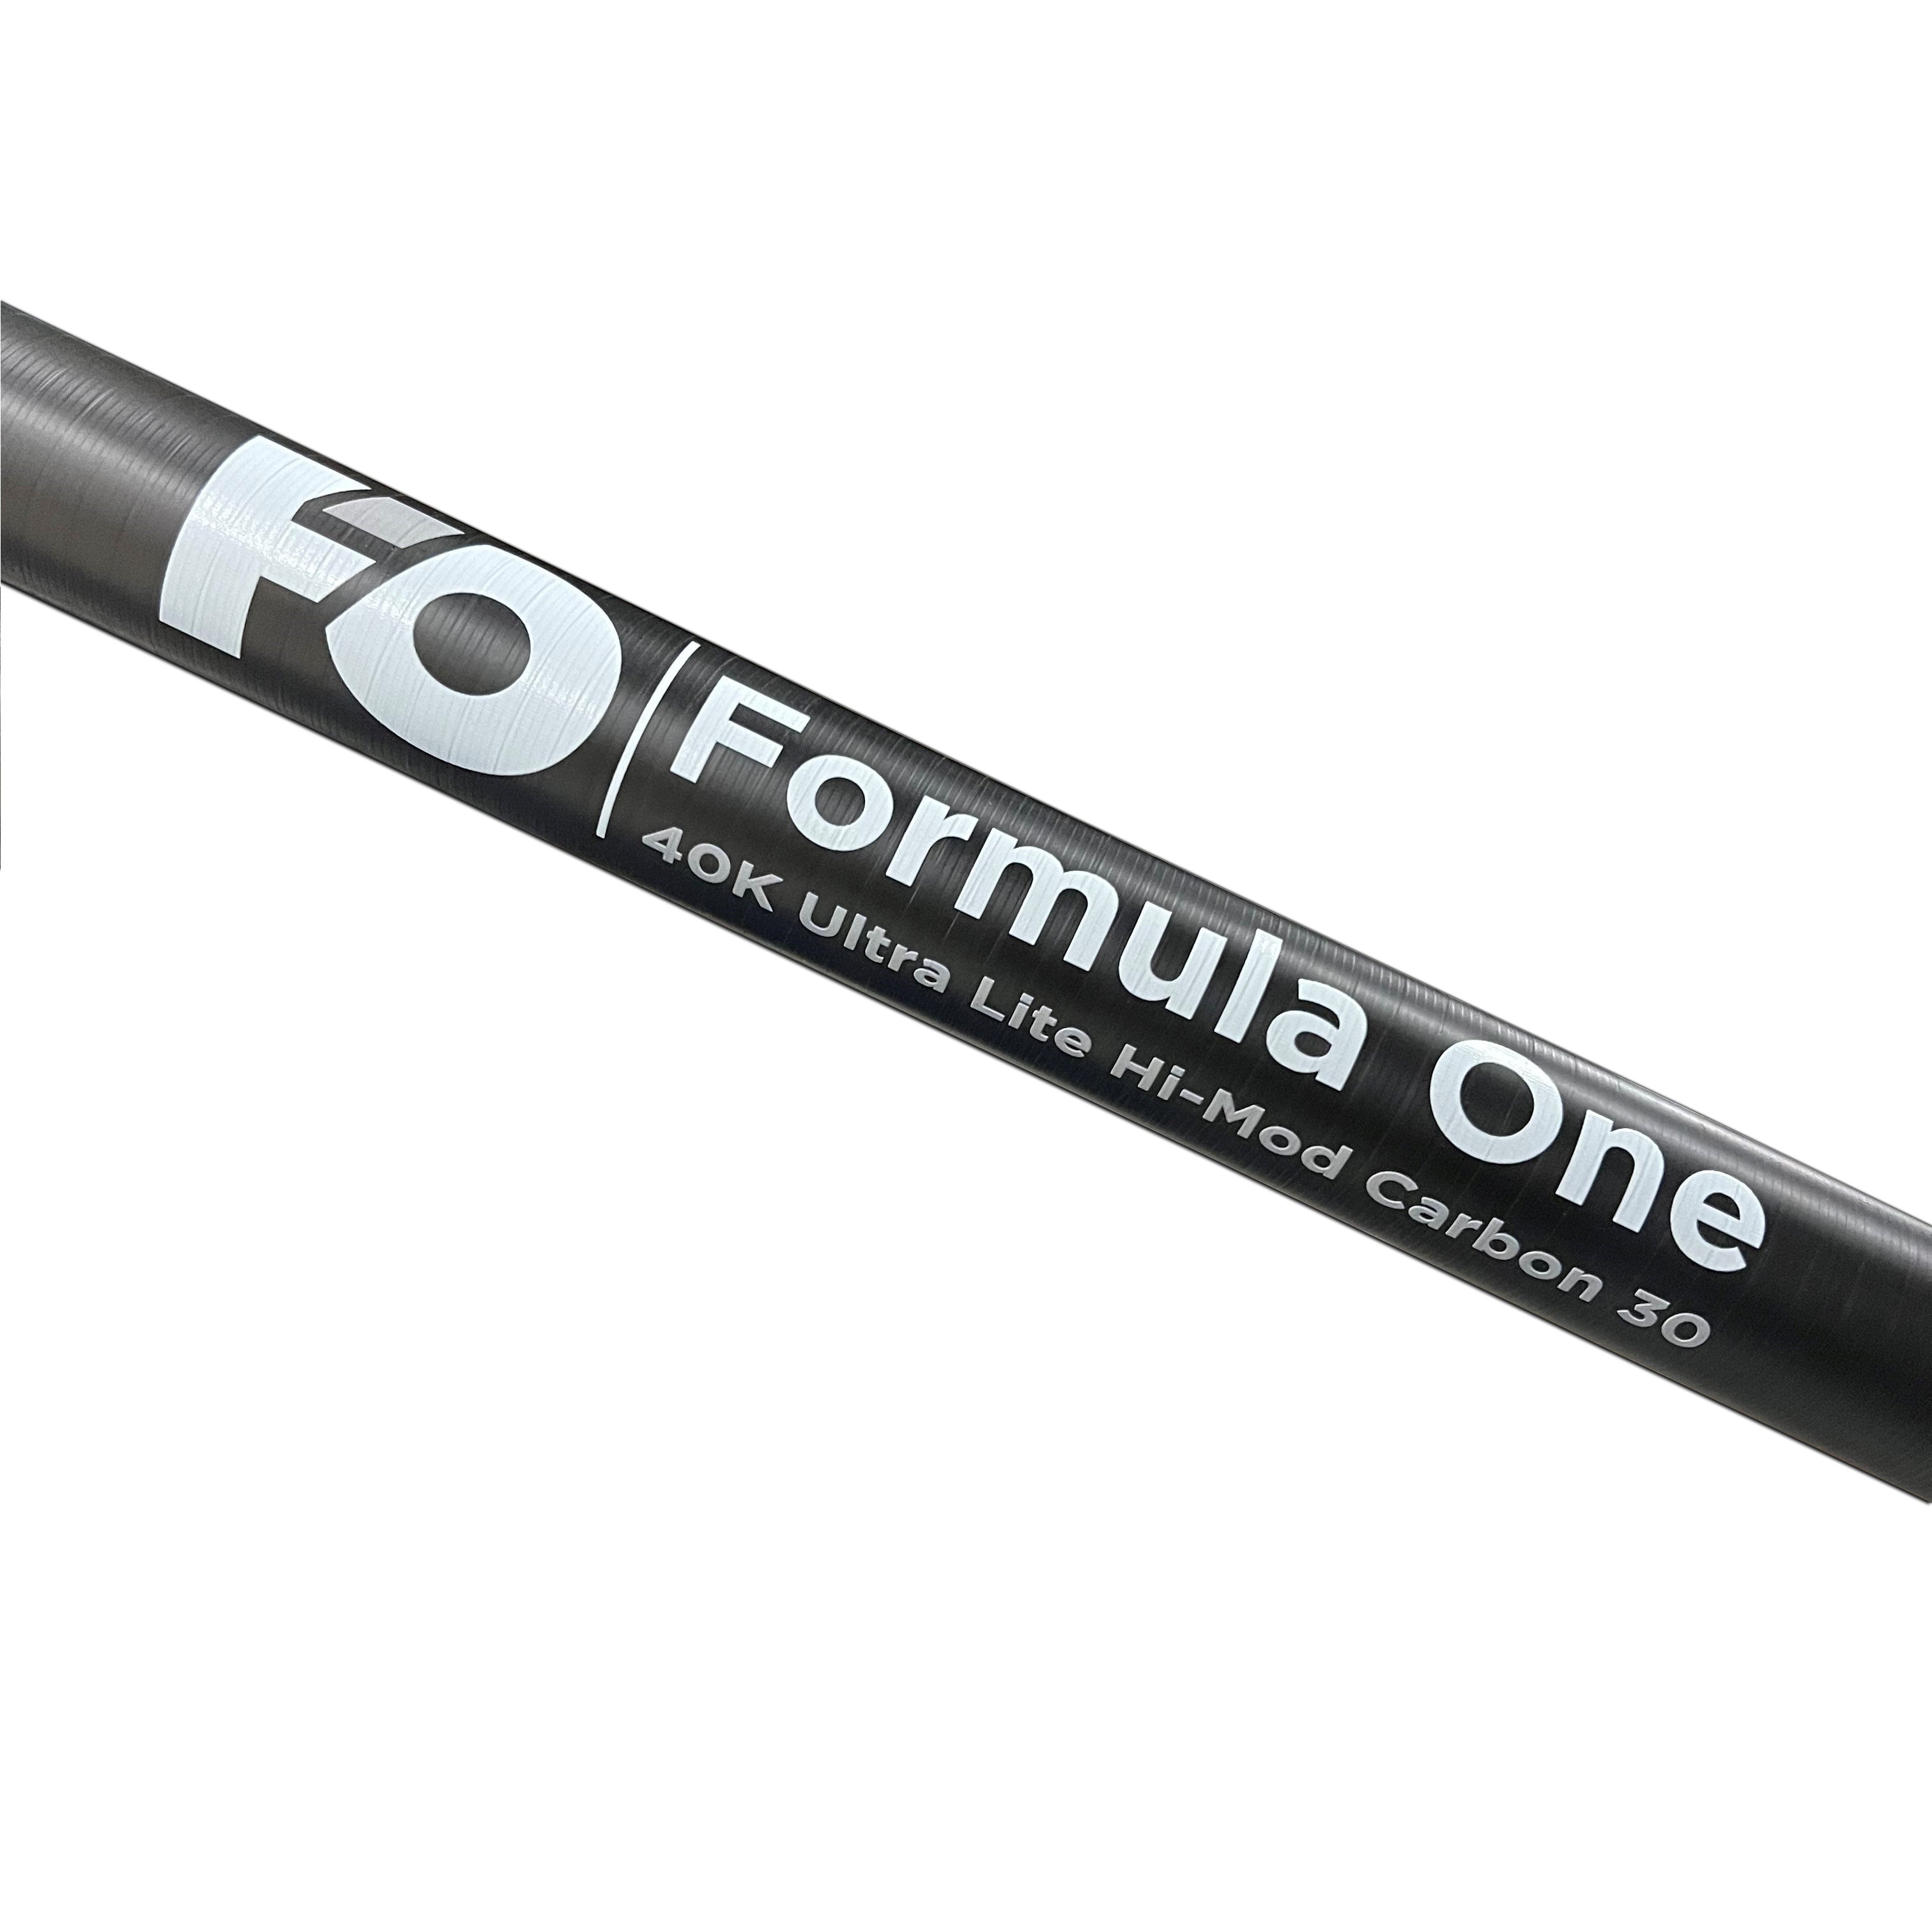 Formula One 40K Ultra-Lite-Hi-Mod-Carbon